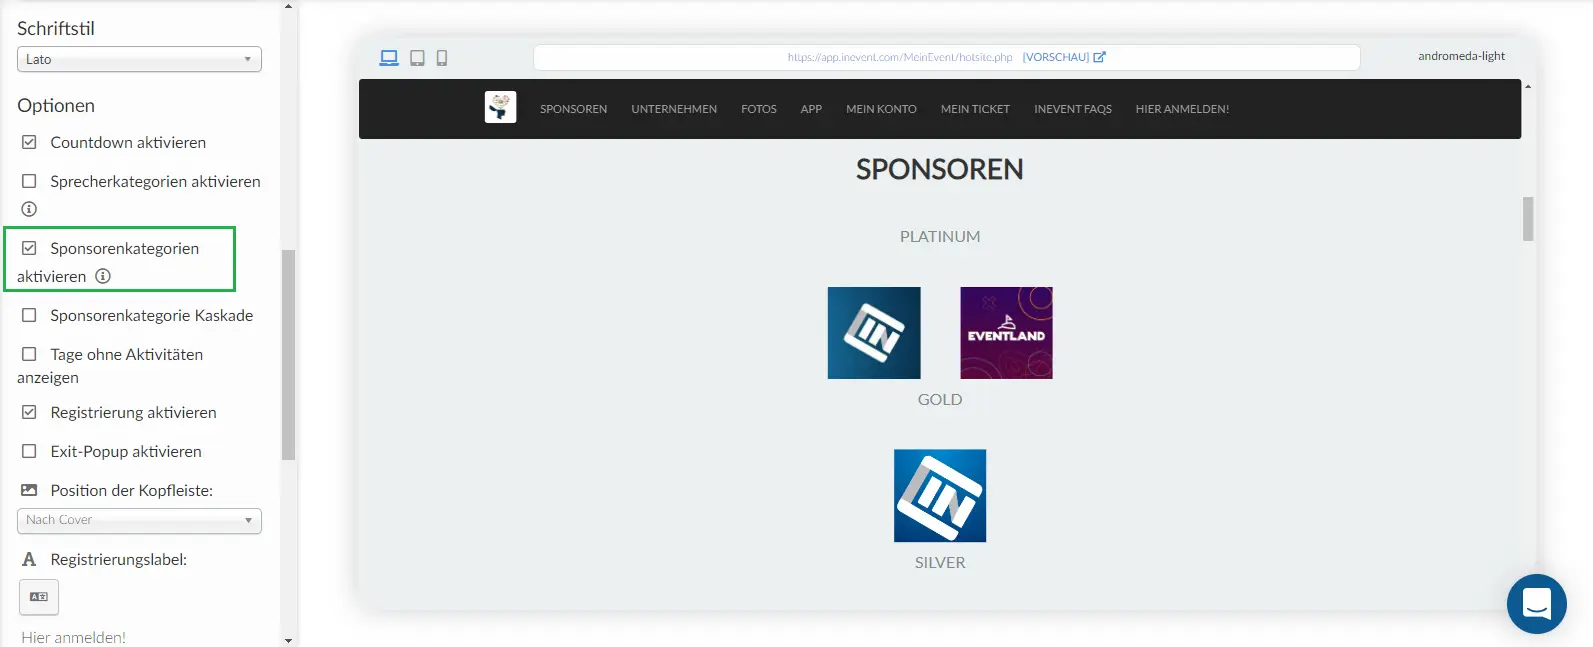 Screenshot of sponsor categories